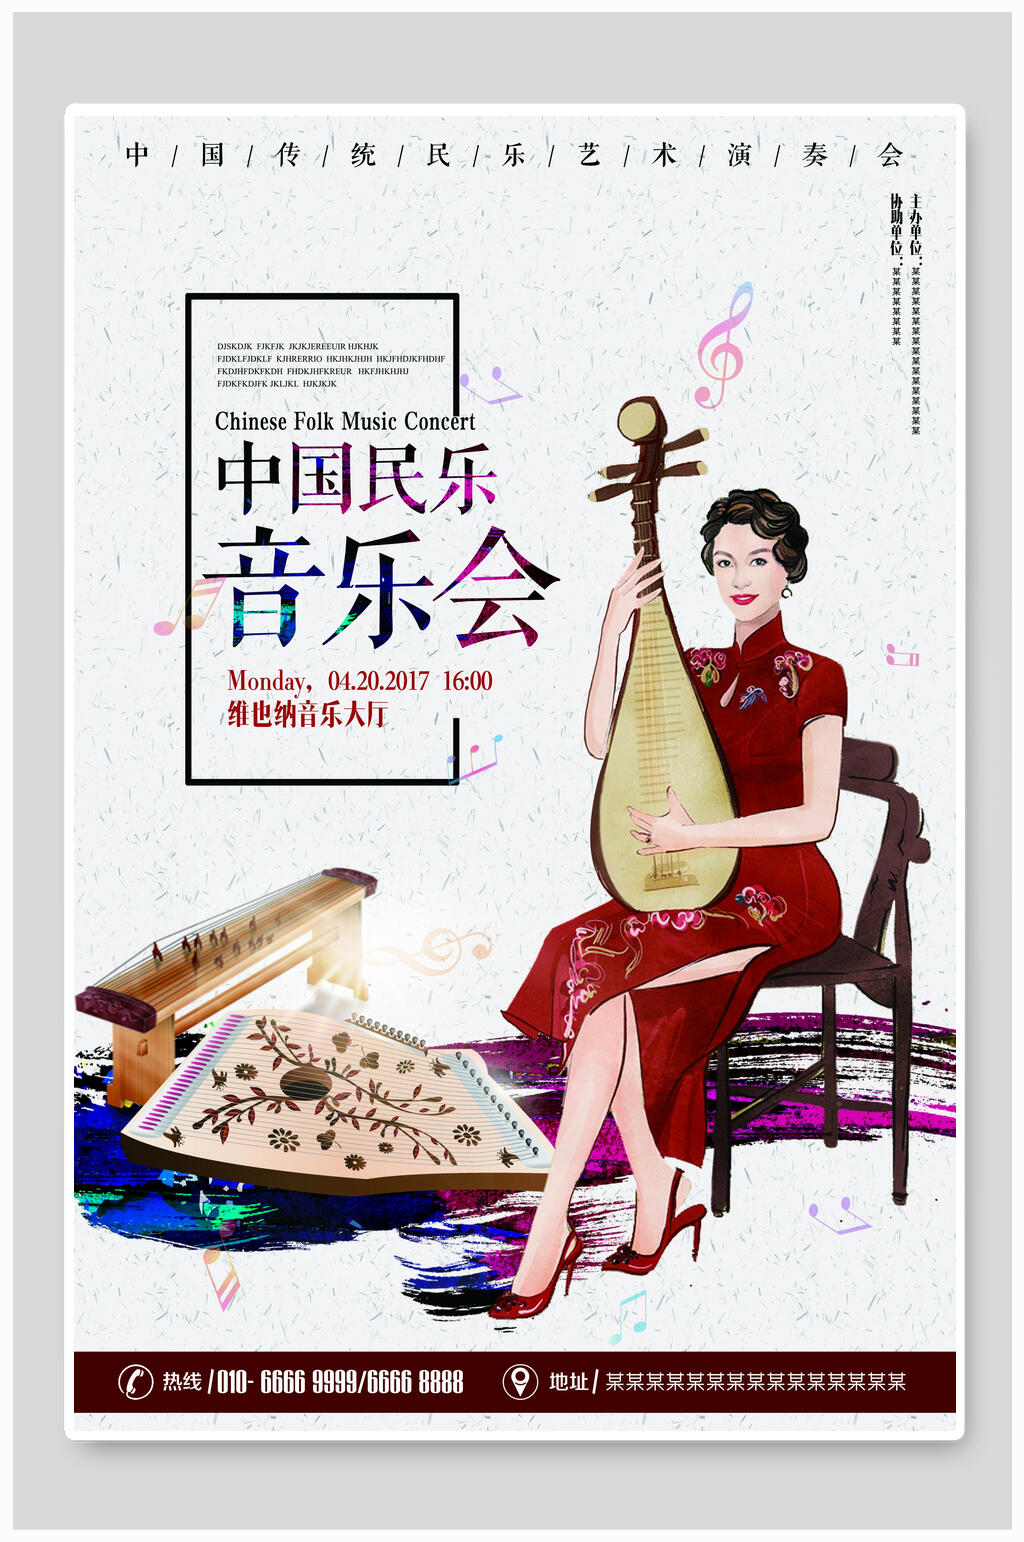 中国民乐音乐演唱会海报设计模板素材